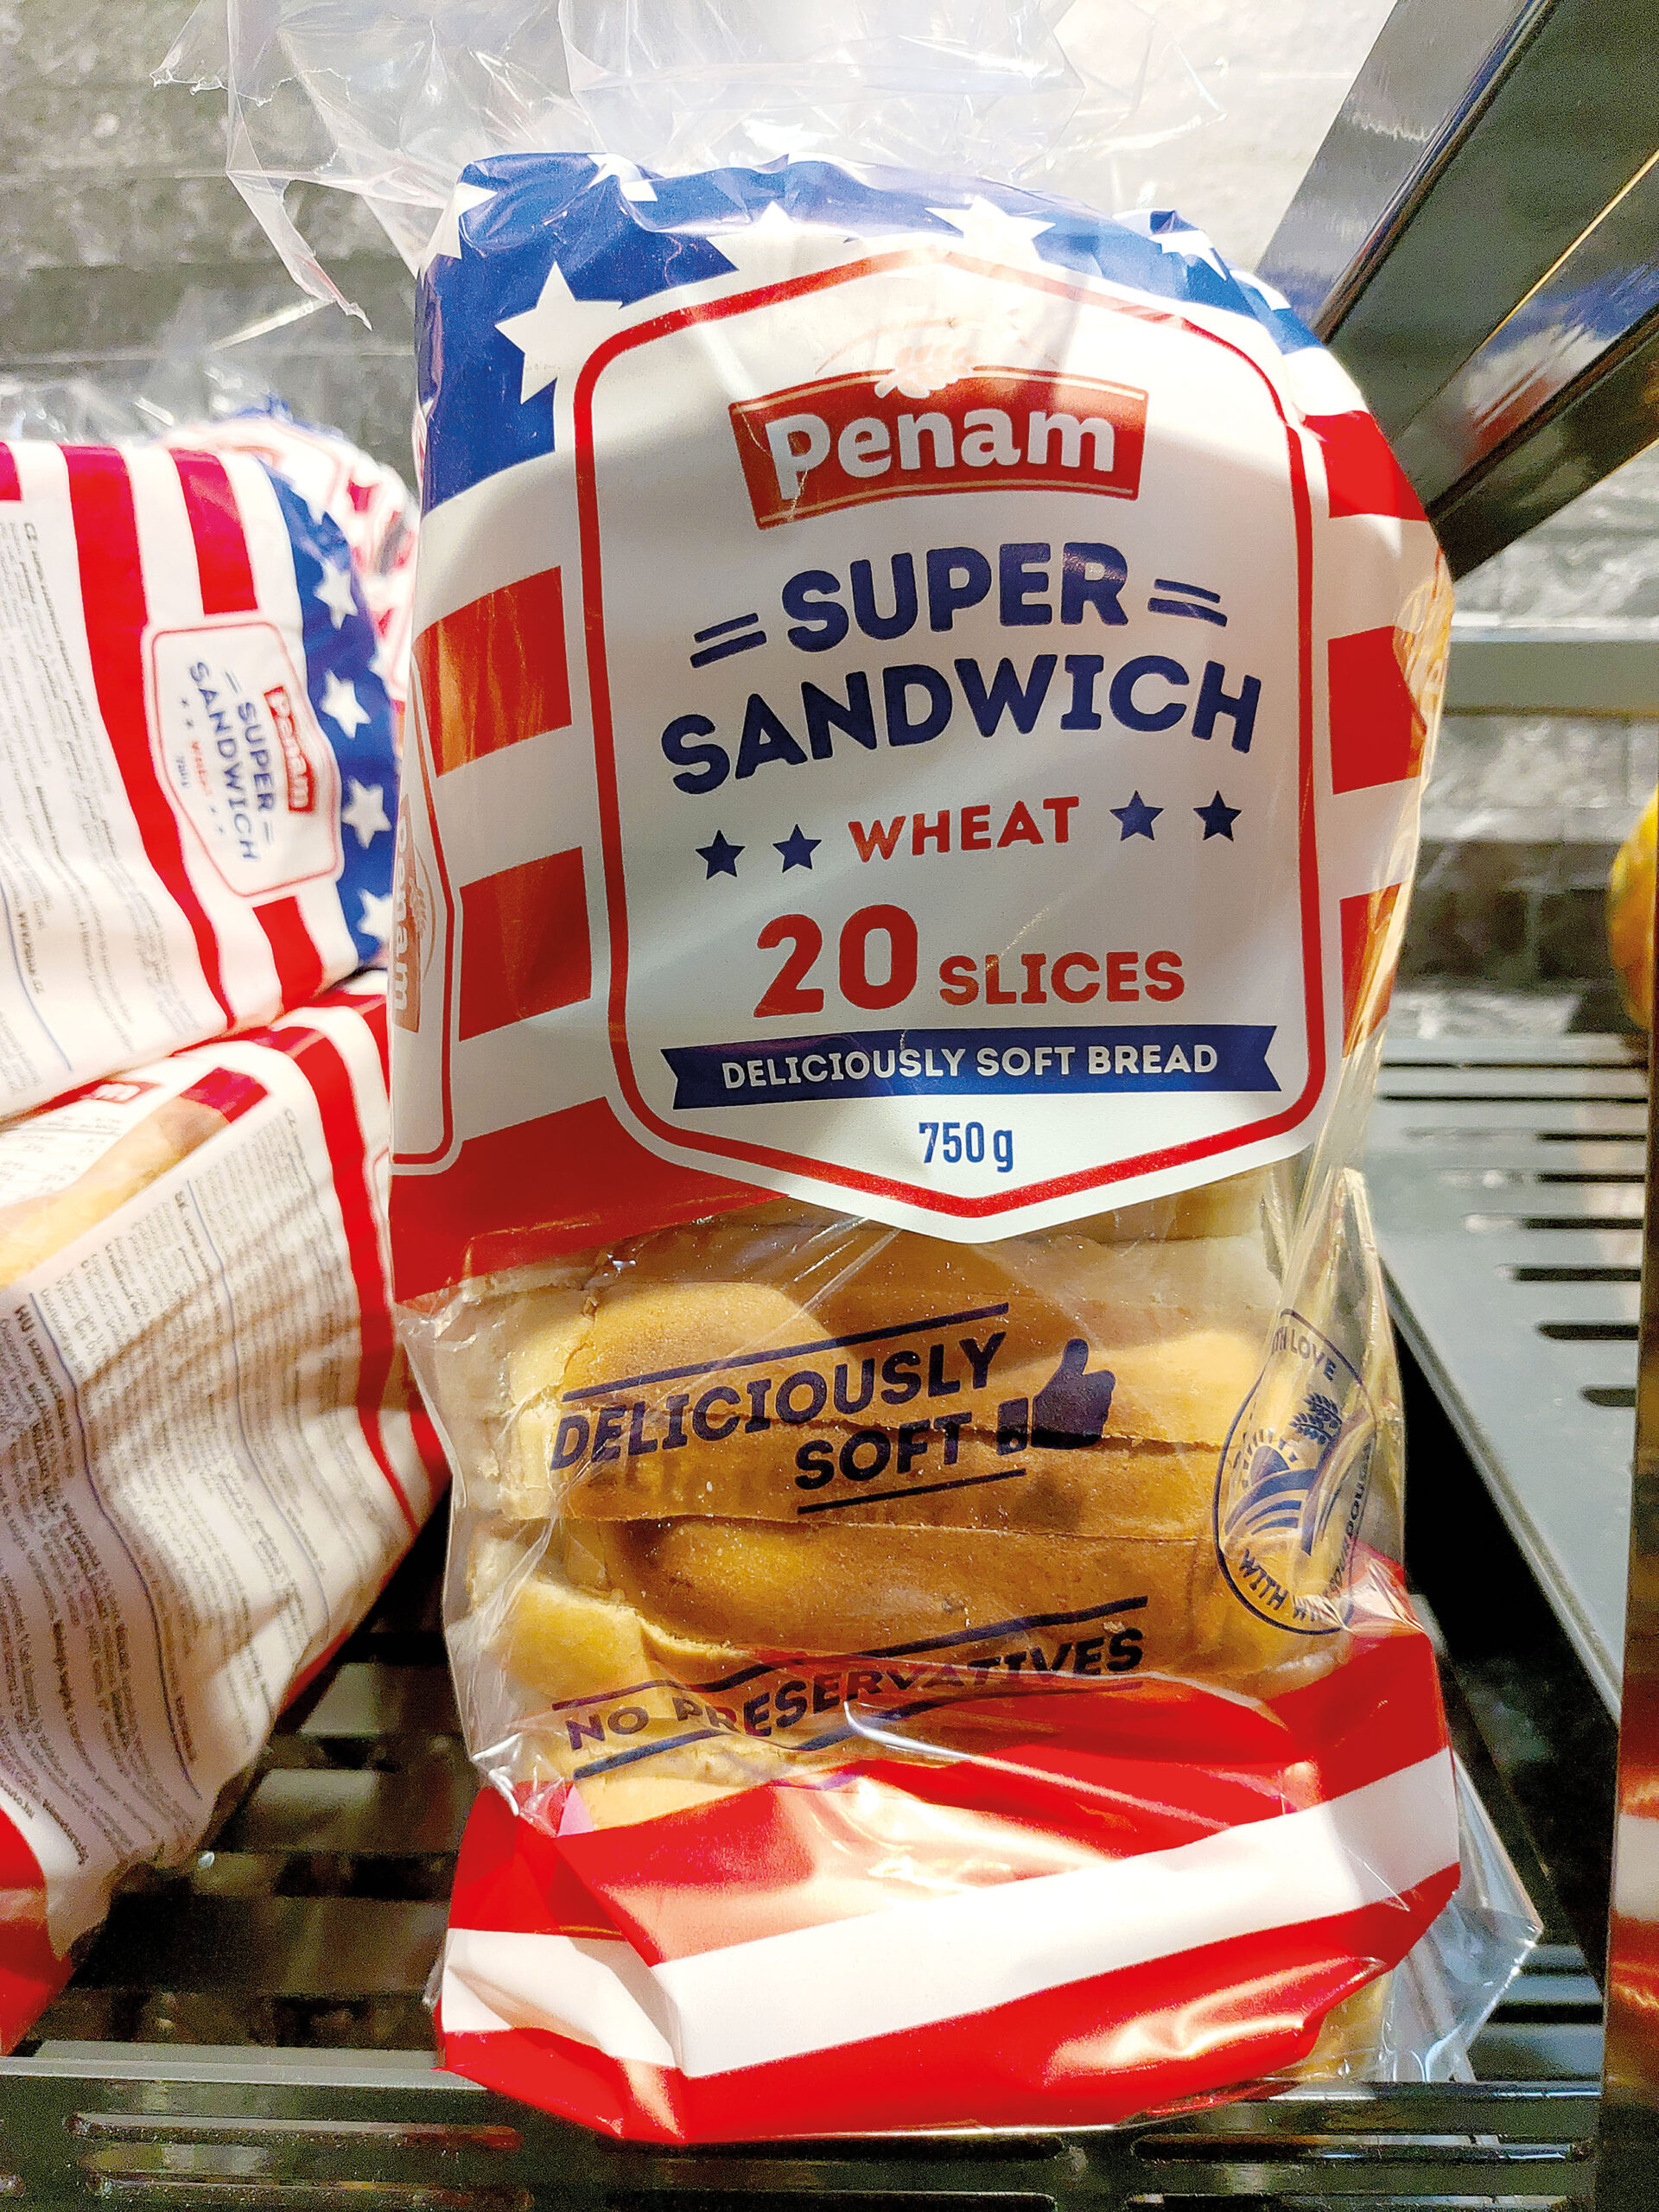 Penam z holdingu Agrofert získal dotace na inovativní výrobu toastového chleba, problém je, že není jasné, v čem byla ona inovace.